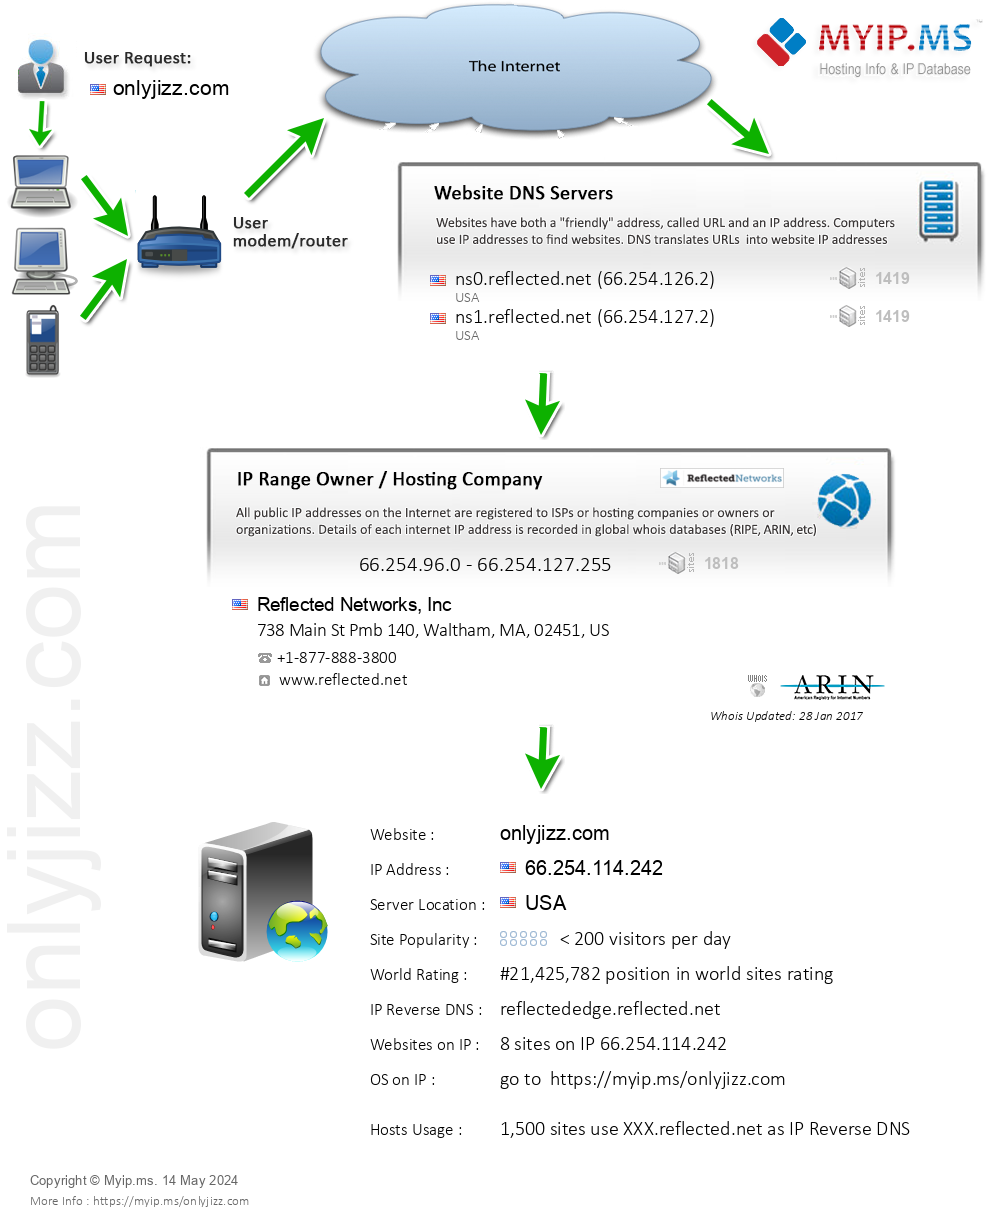 Onlyjizz.com - Website Hosting Visual IP Diagram